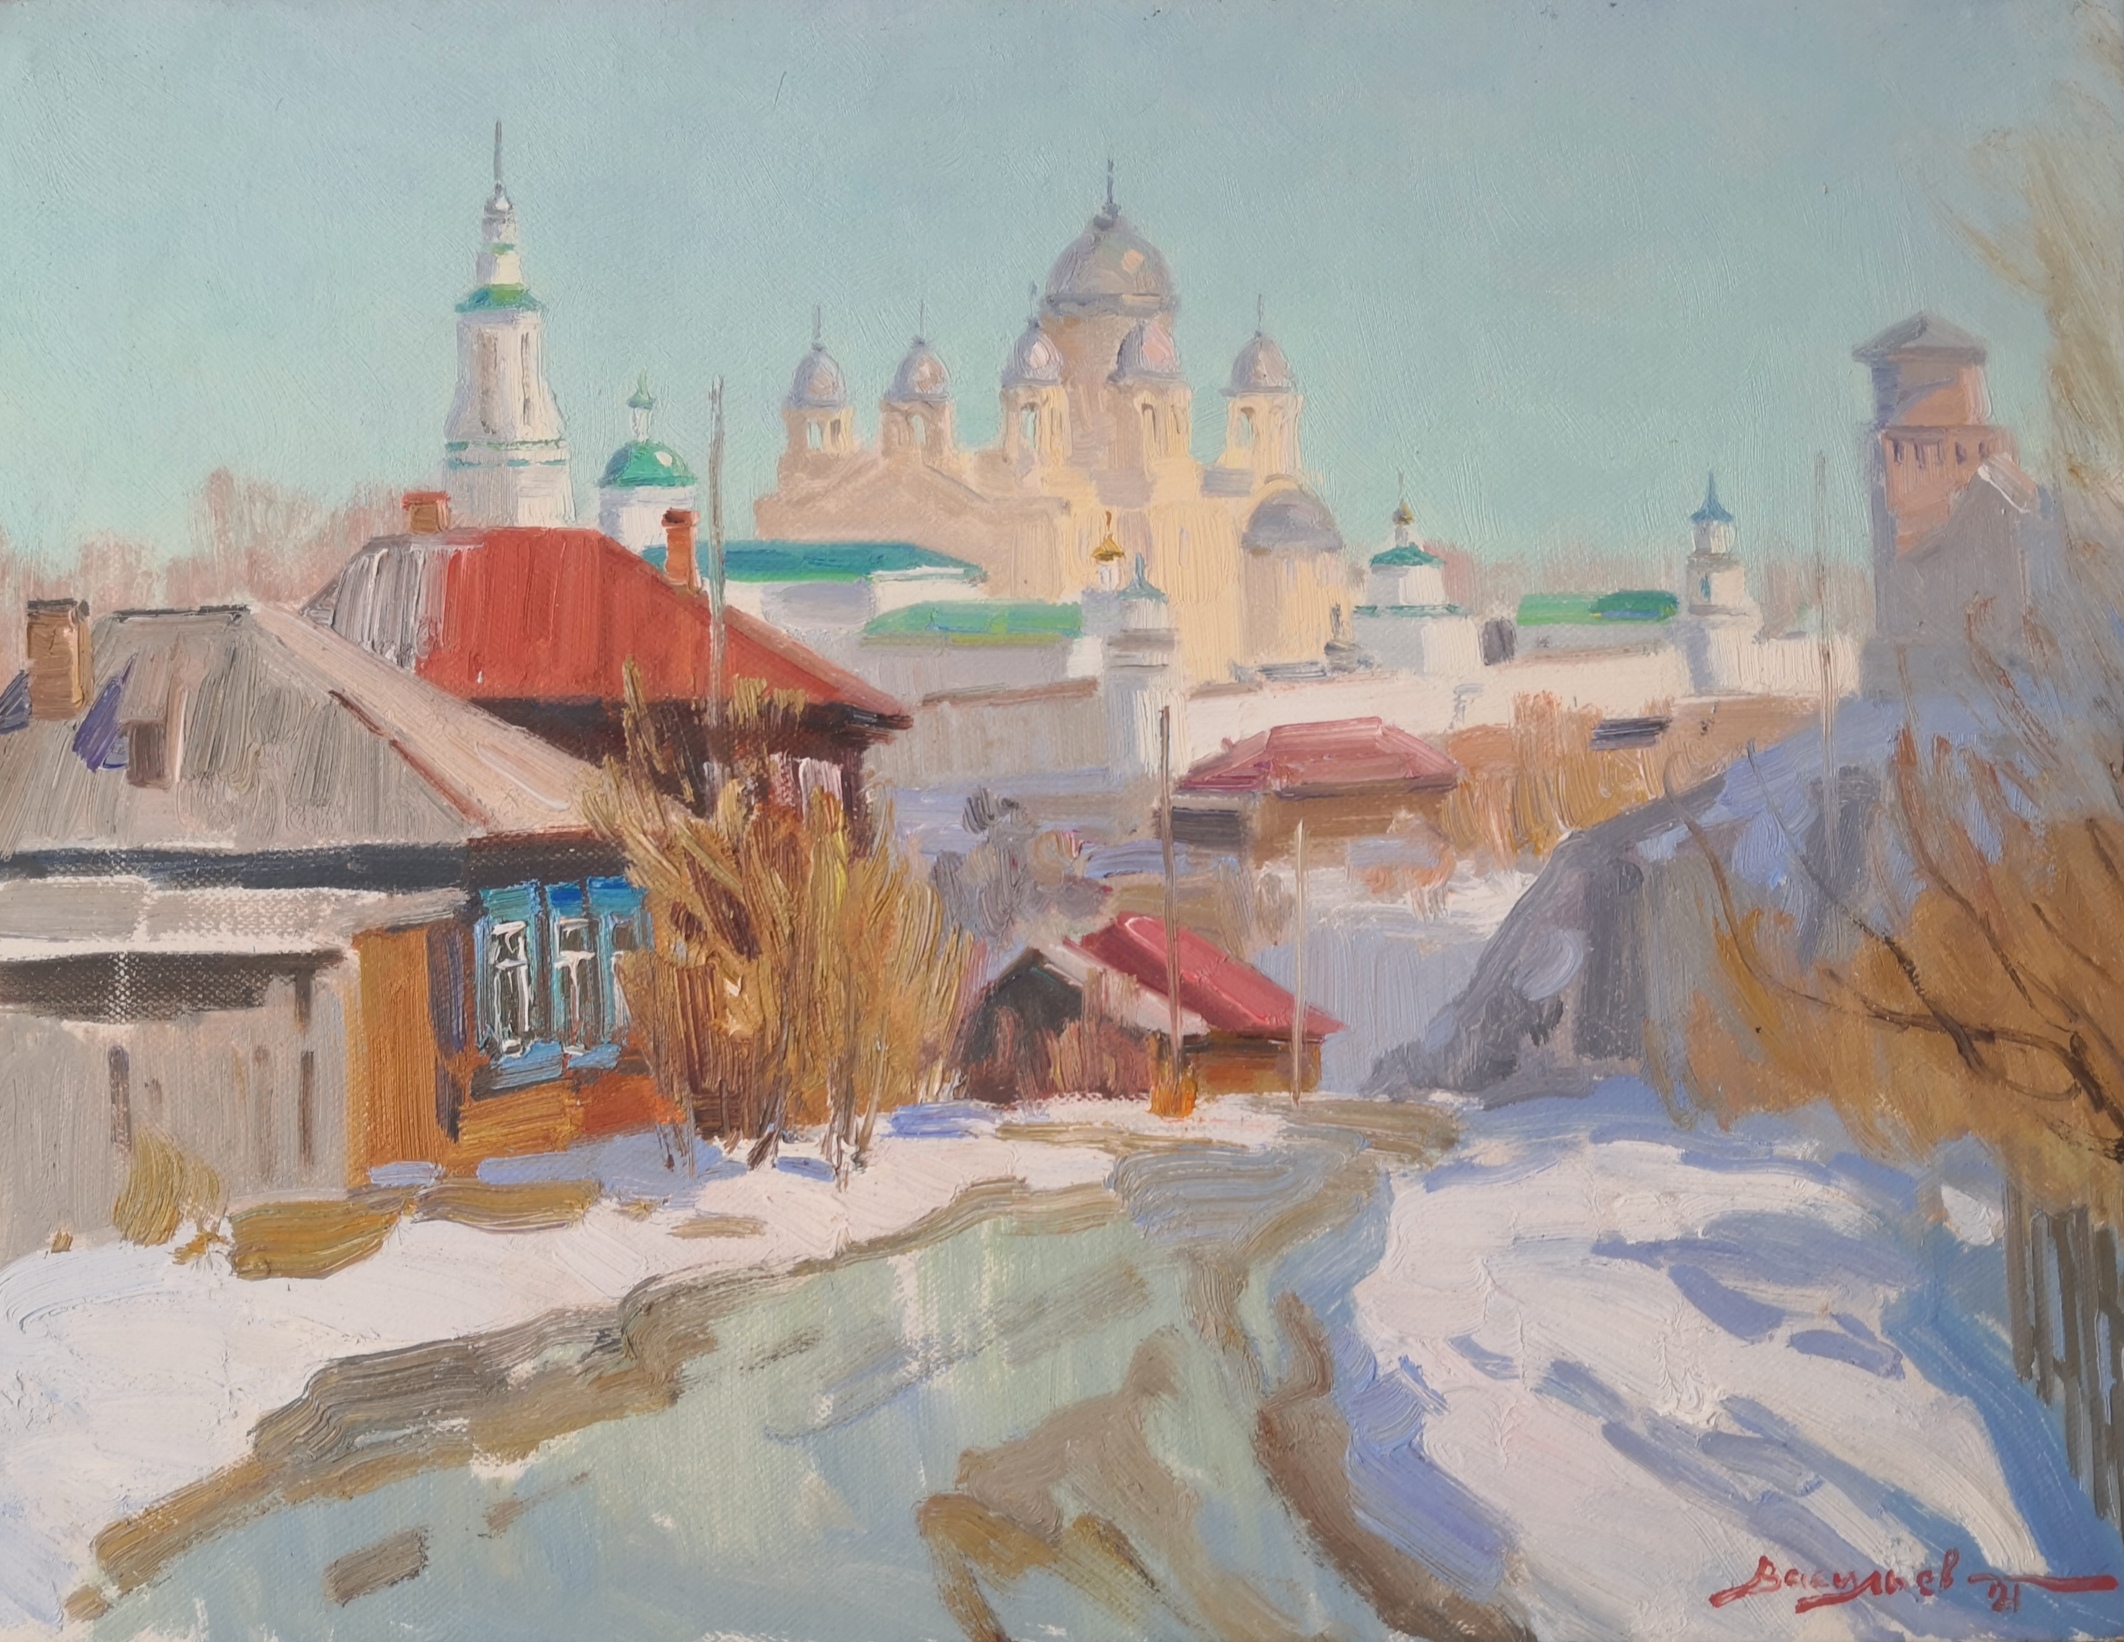 Morning in Verhoturye - 1, Dmitry Vasiliev, Buy the painting Oil